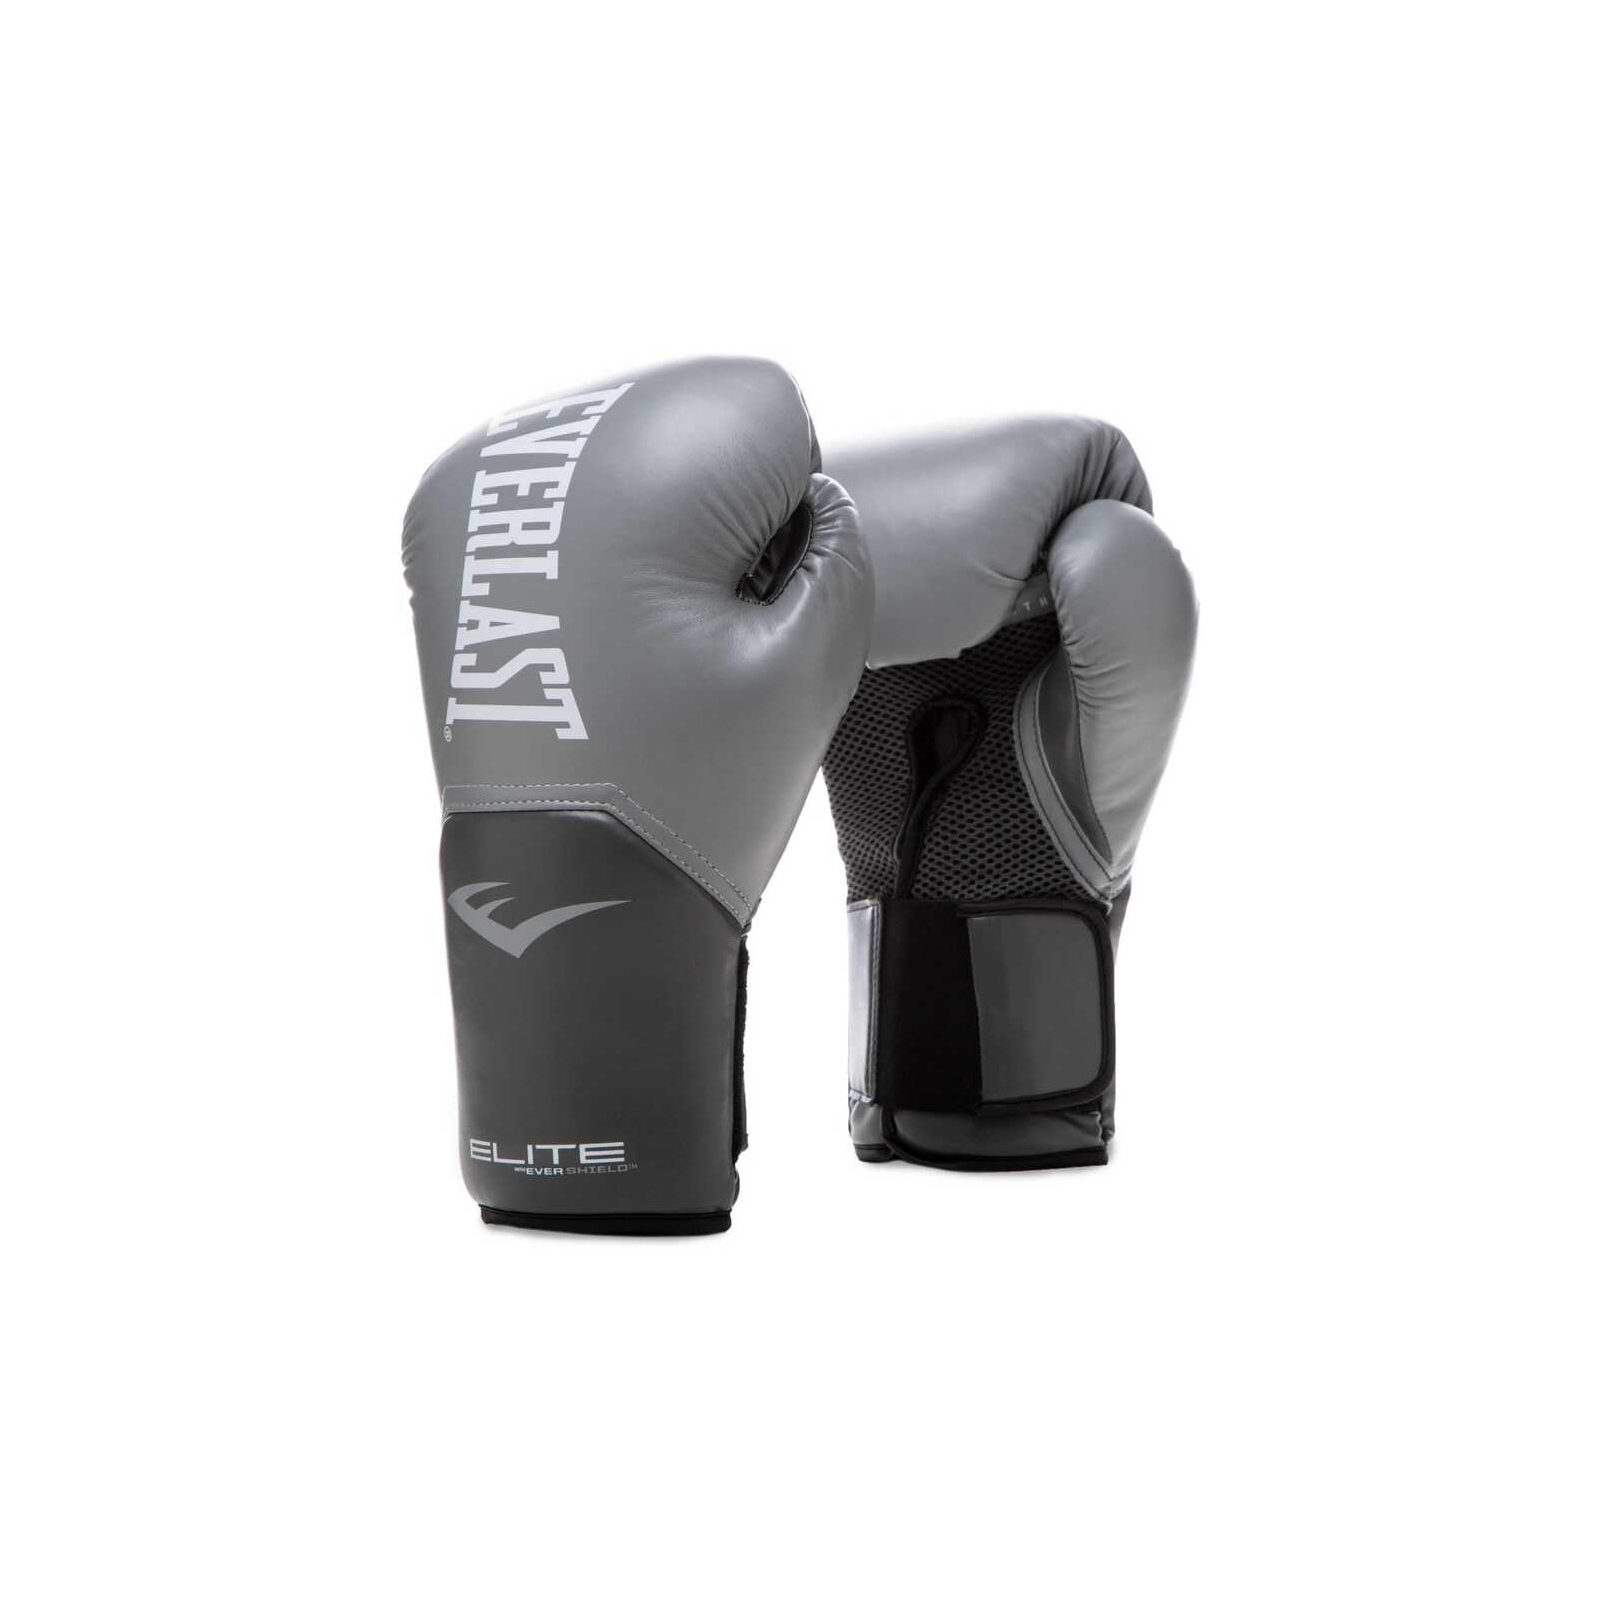 Боксерські рукавички Everlast Elite Training Gloves 870282-70-4 червоний 12 oz (009283608828)